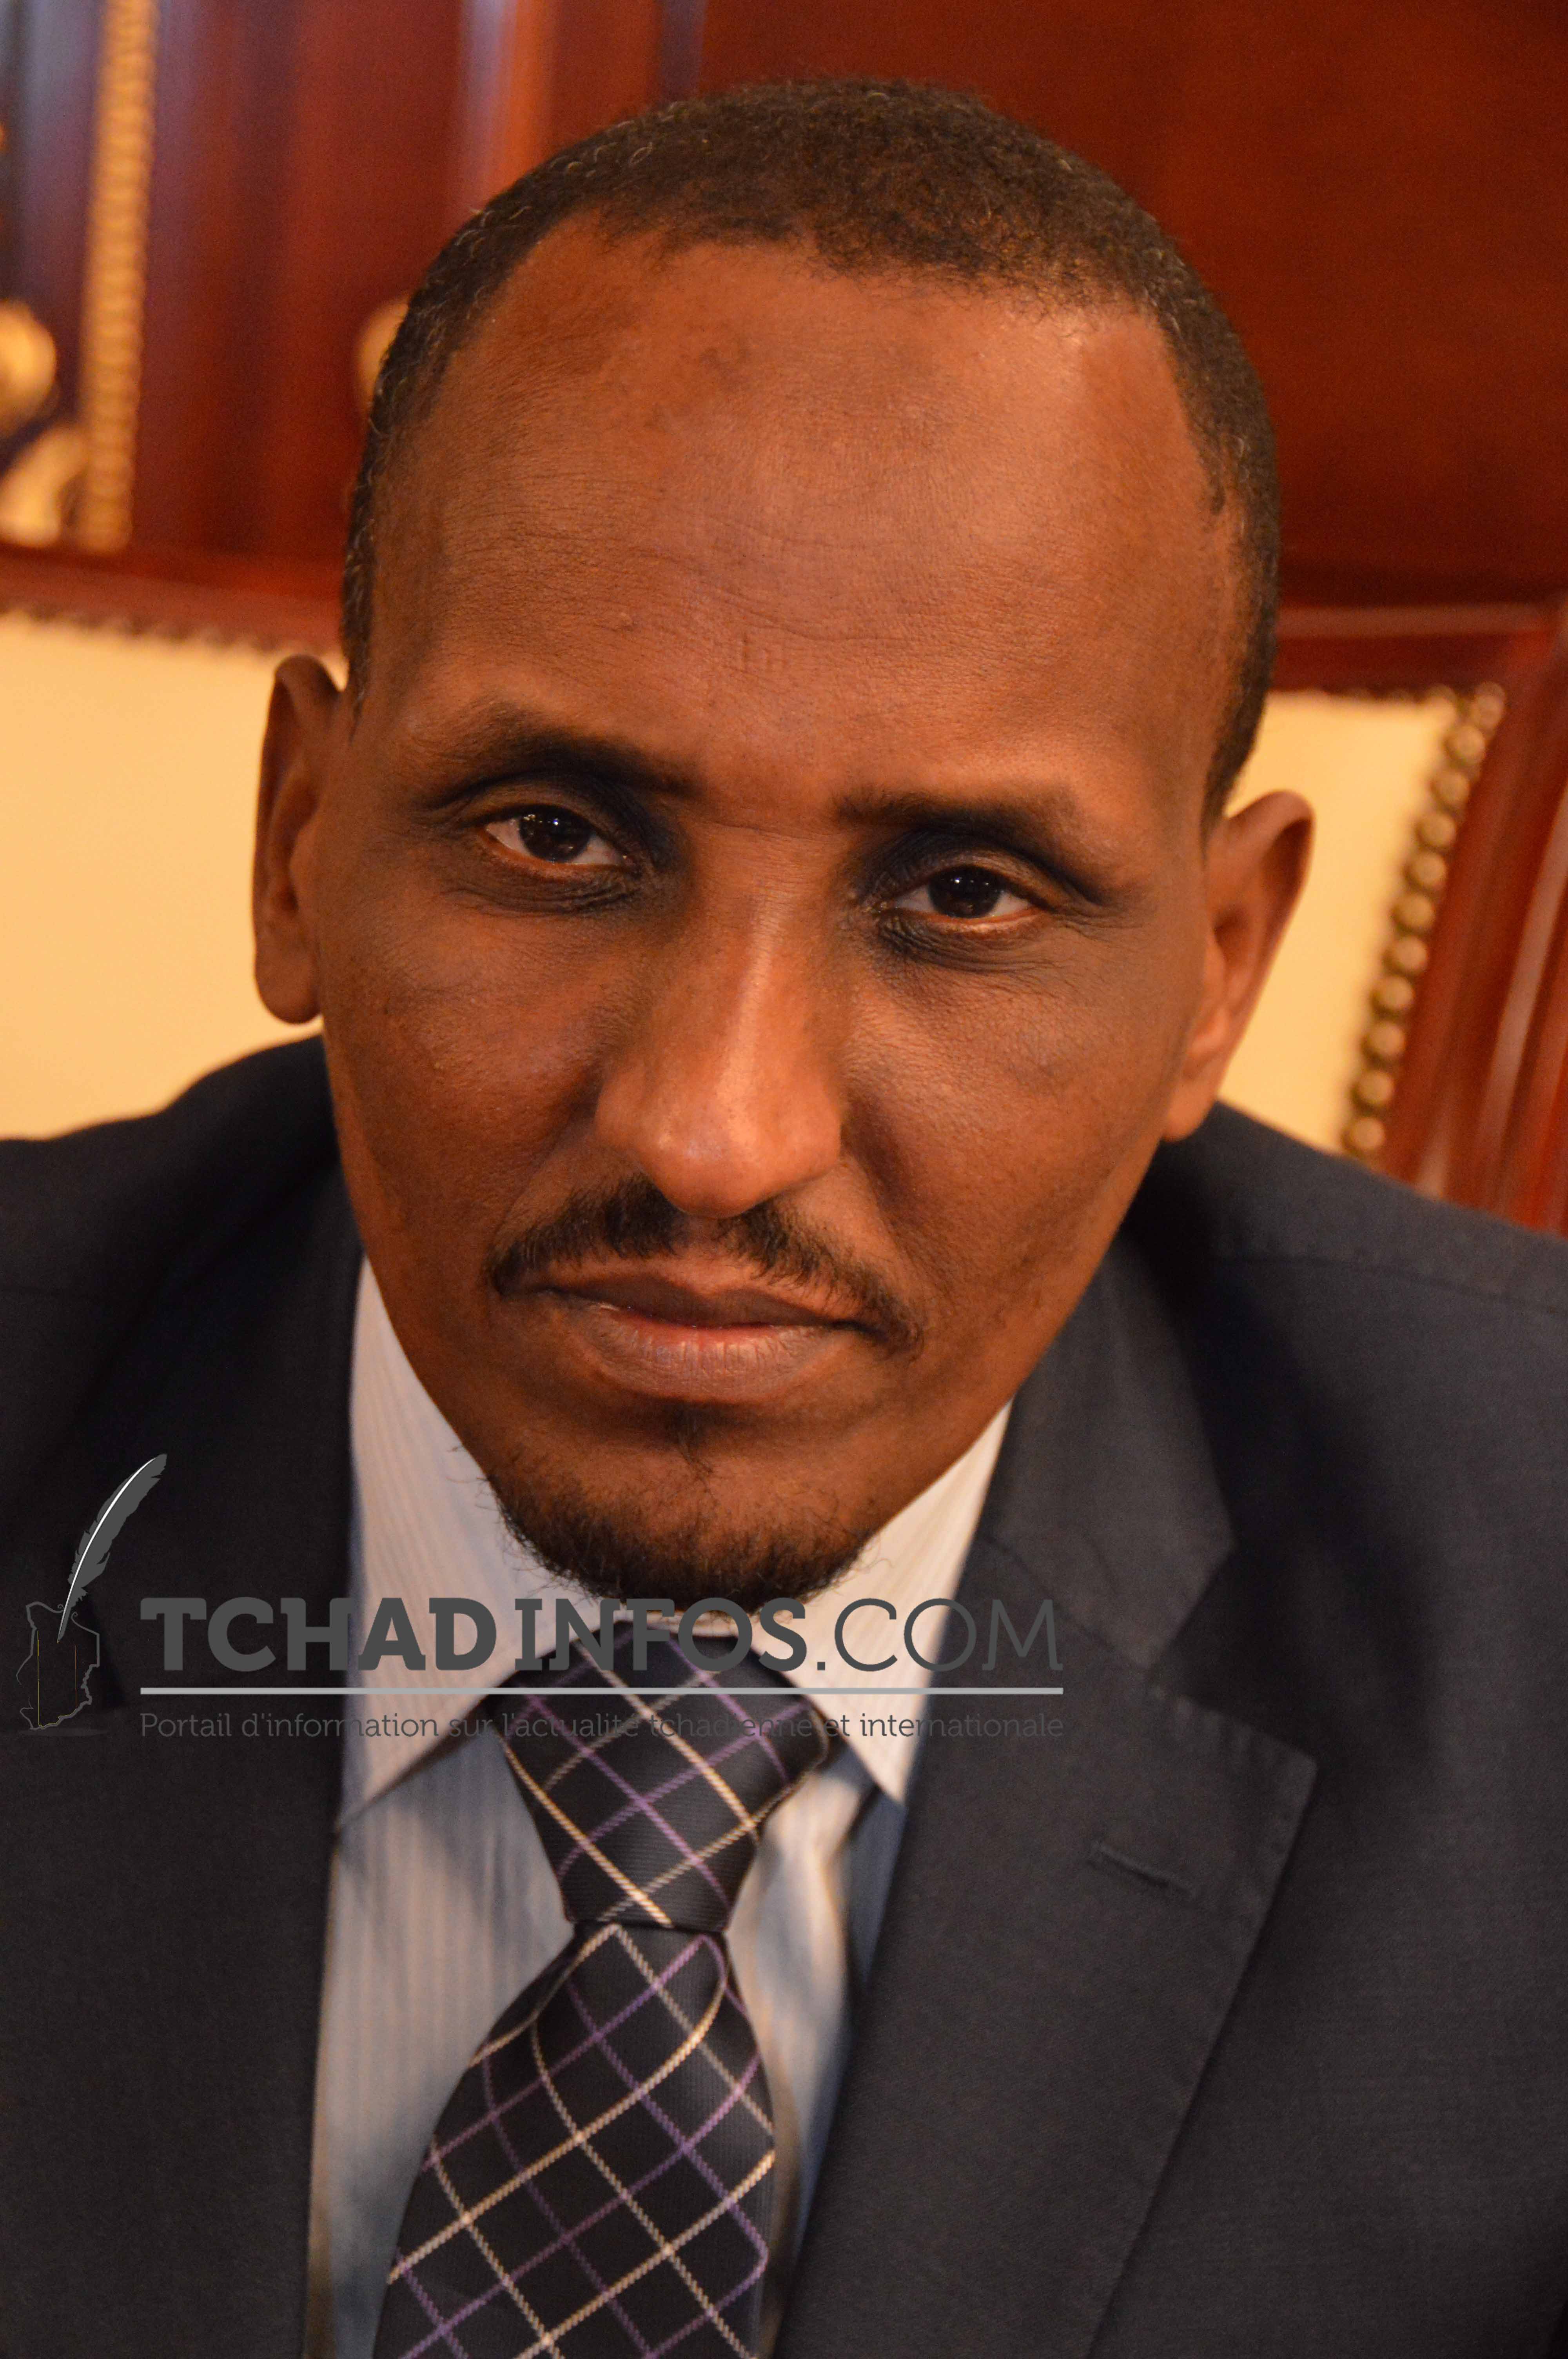 Tchad : Hissein Massar Hissein trouve un compromis avec le Synecs